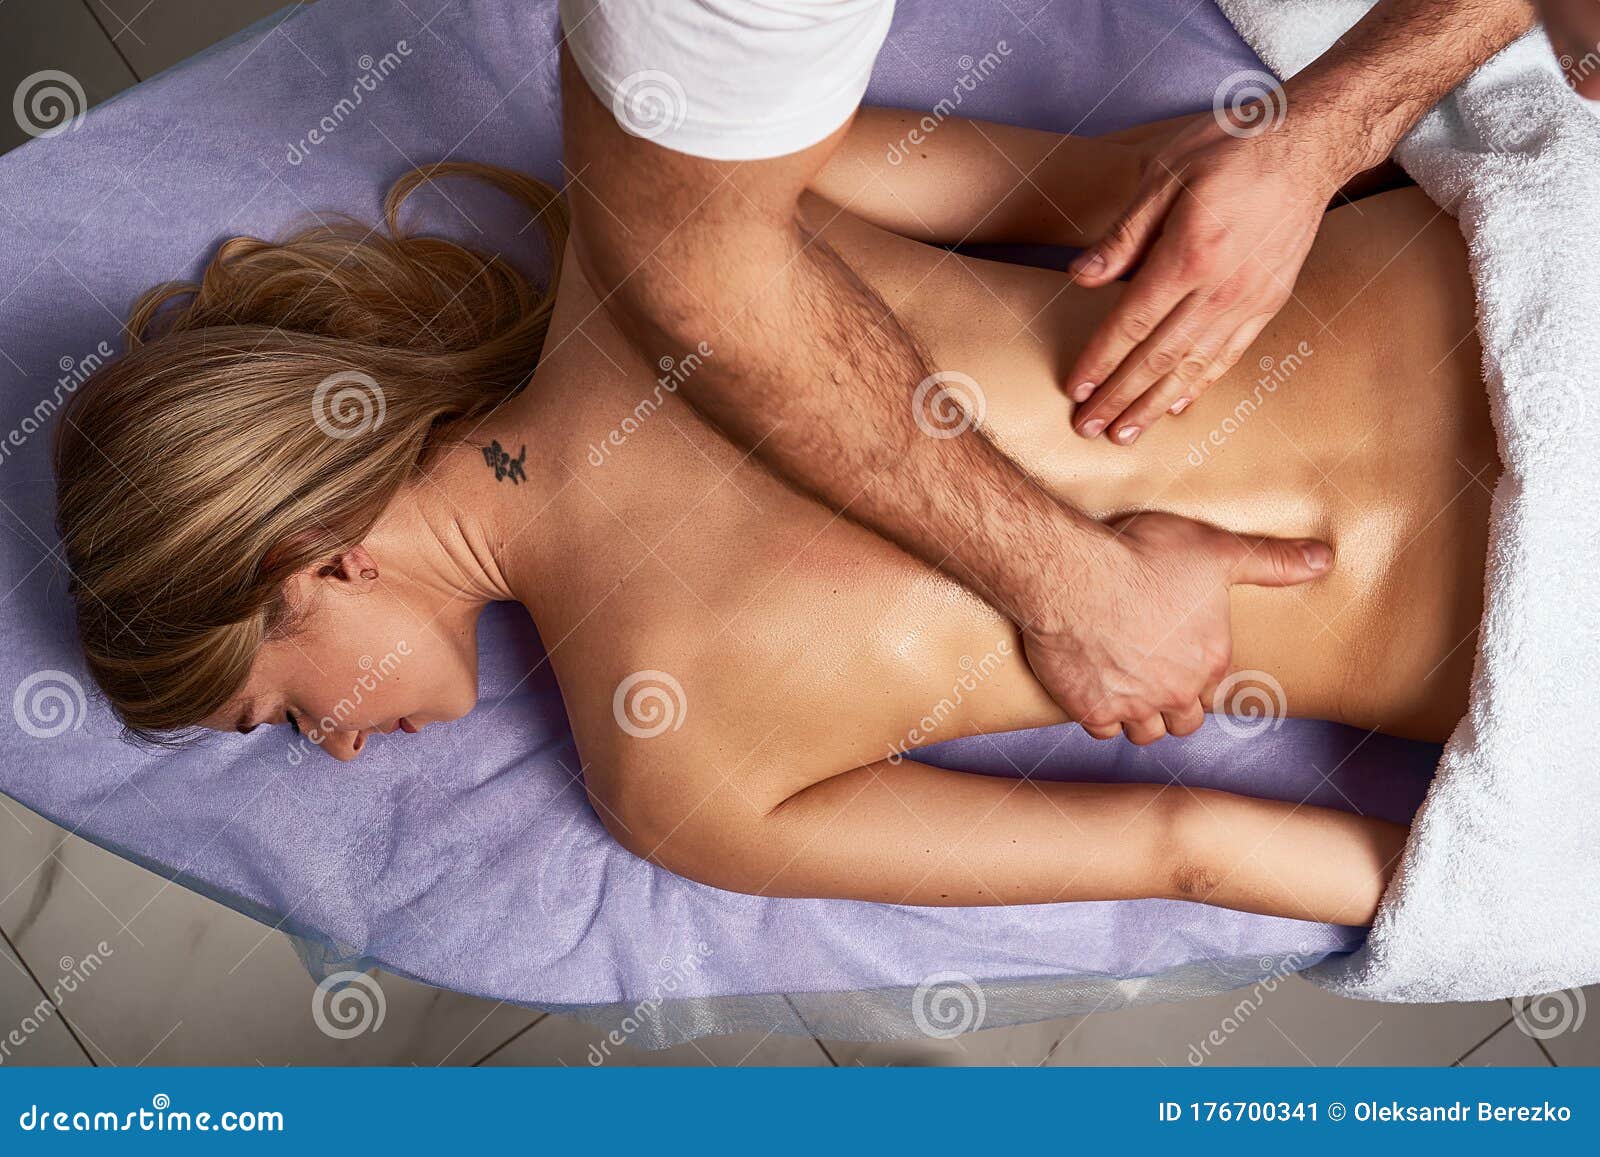 как называется массаж который делают грудью фото 4